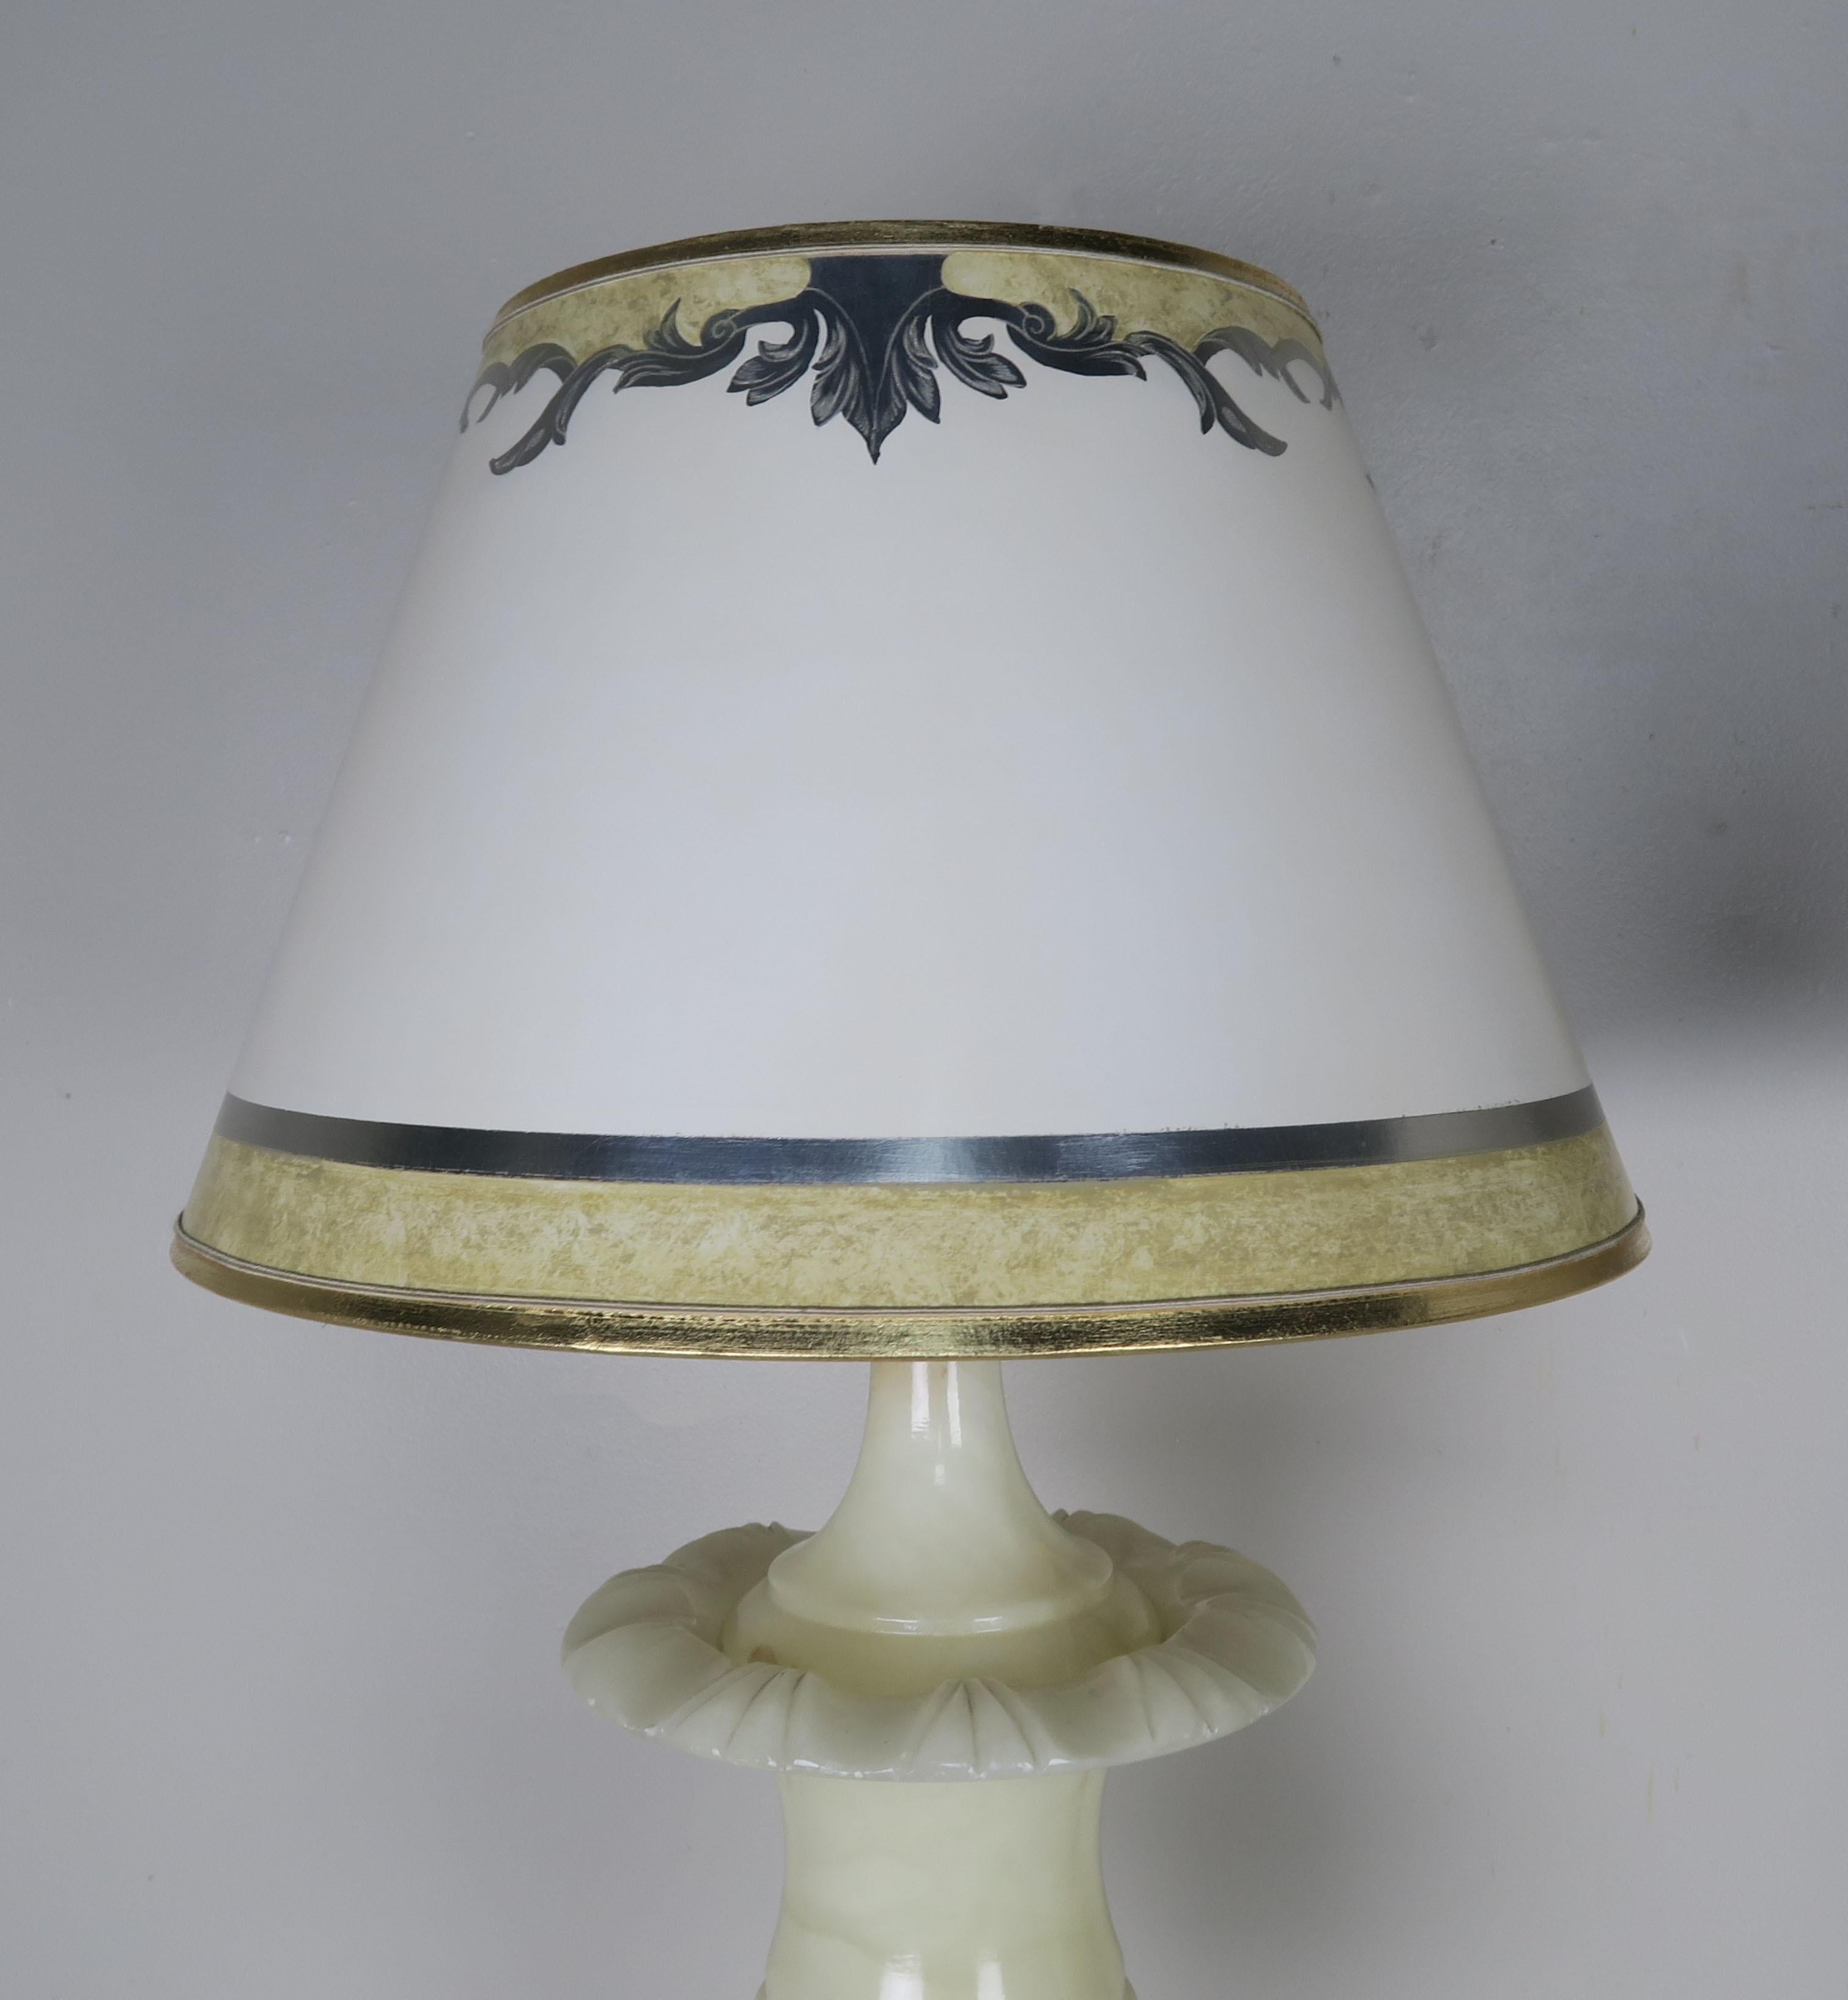 Lampes en forme d'urne en albâtre crème avec des abat-jours en parchemin peints à la main. Les lampes ont été récemment recâblées et couronnées d'abat-jours en parchemin peints à la main.